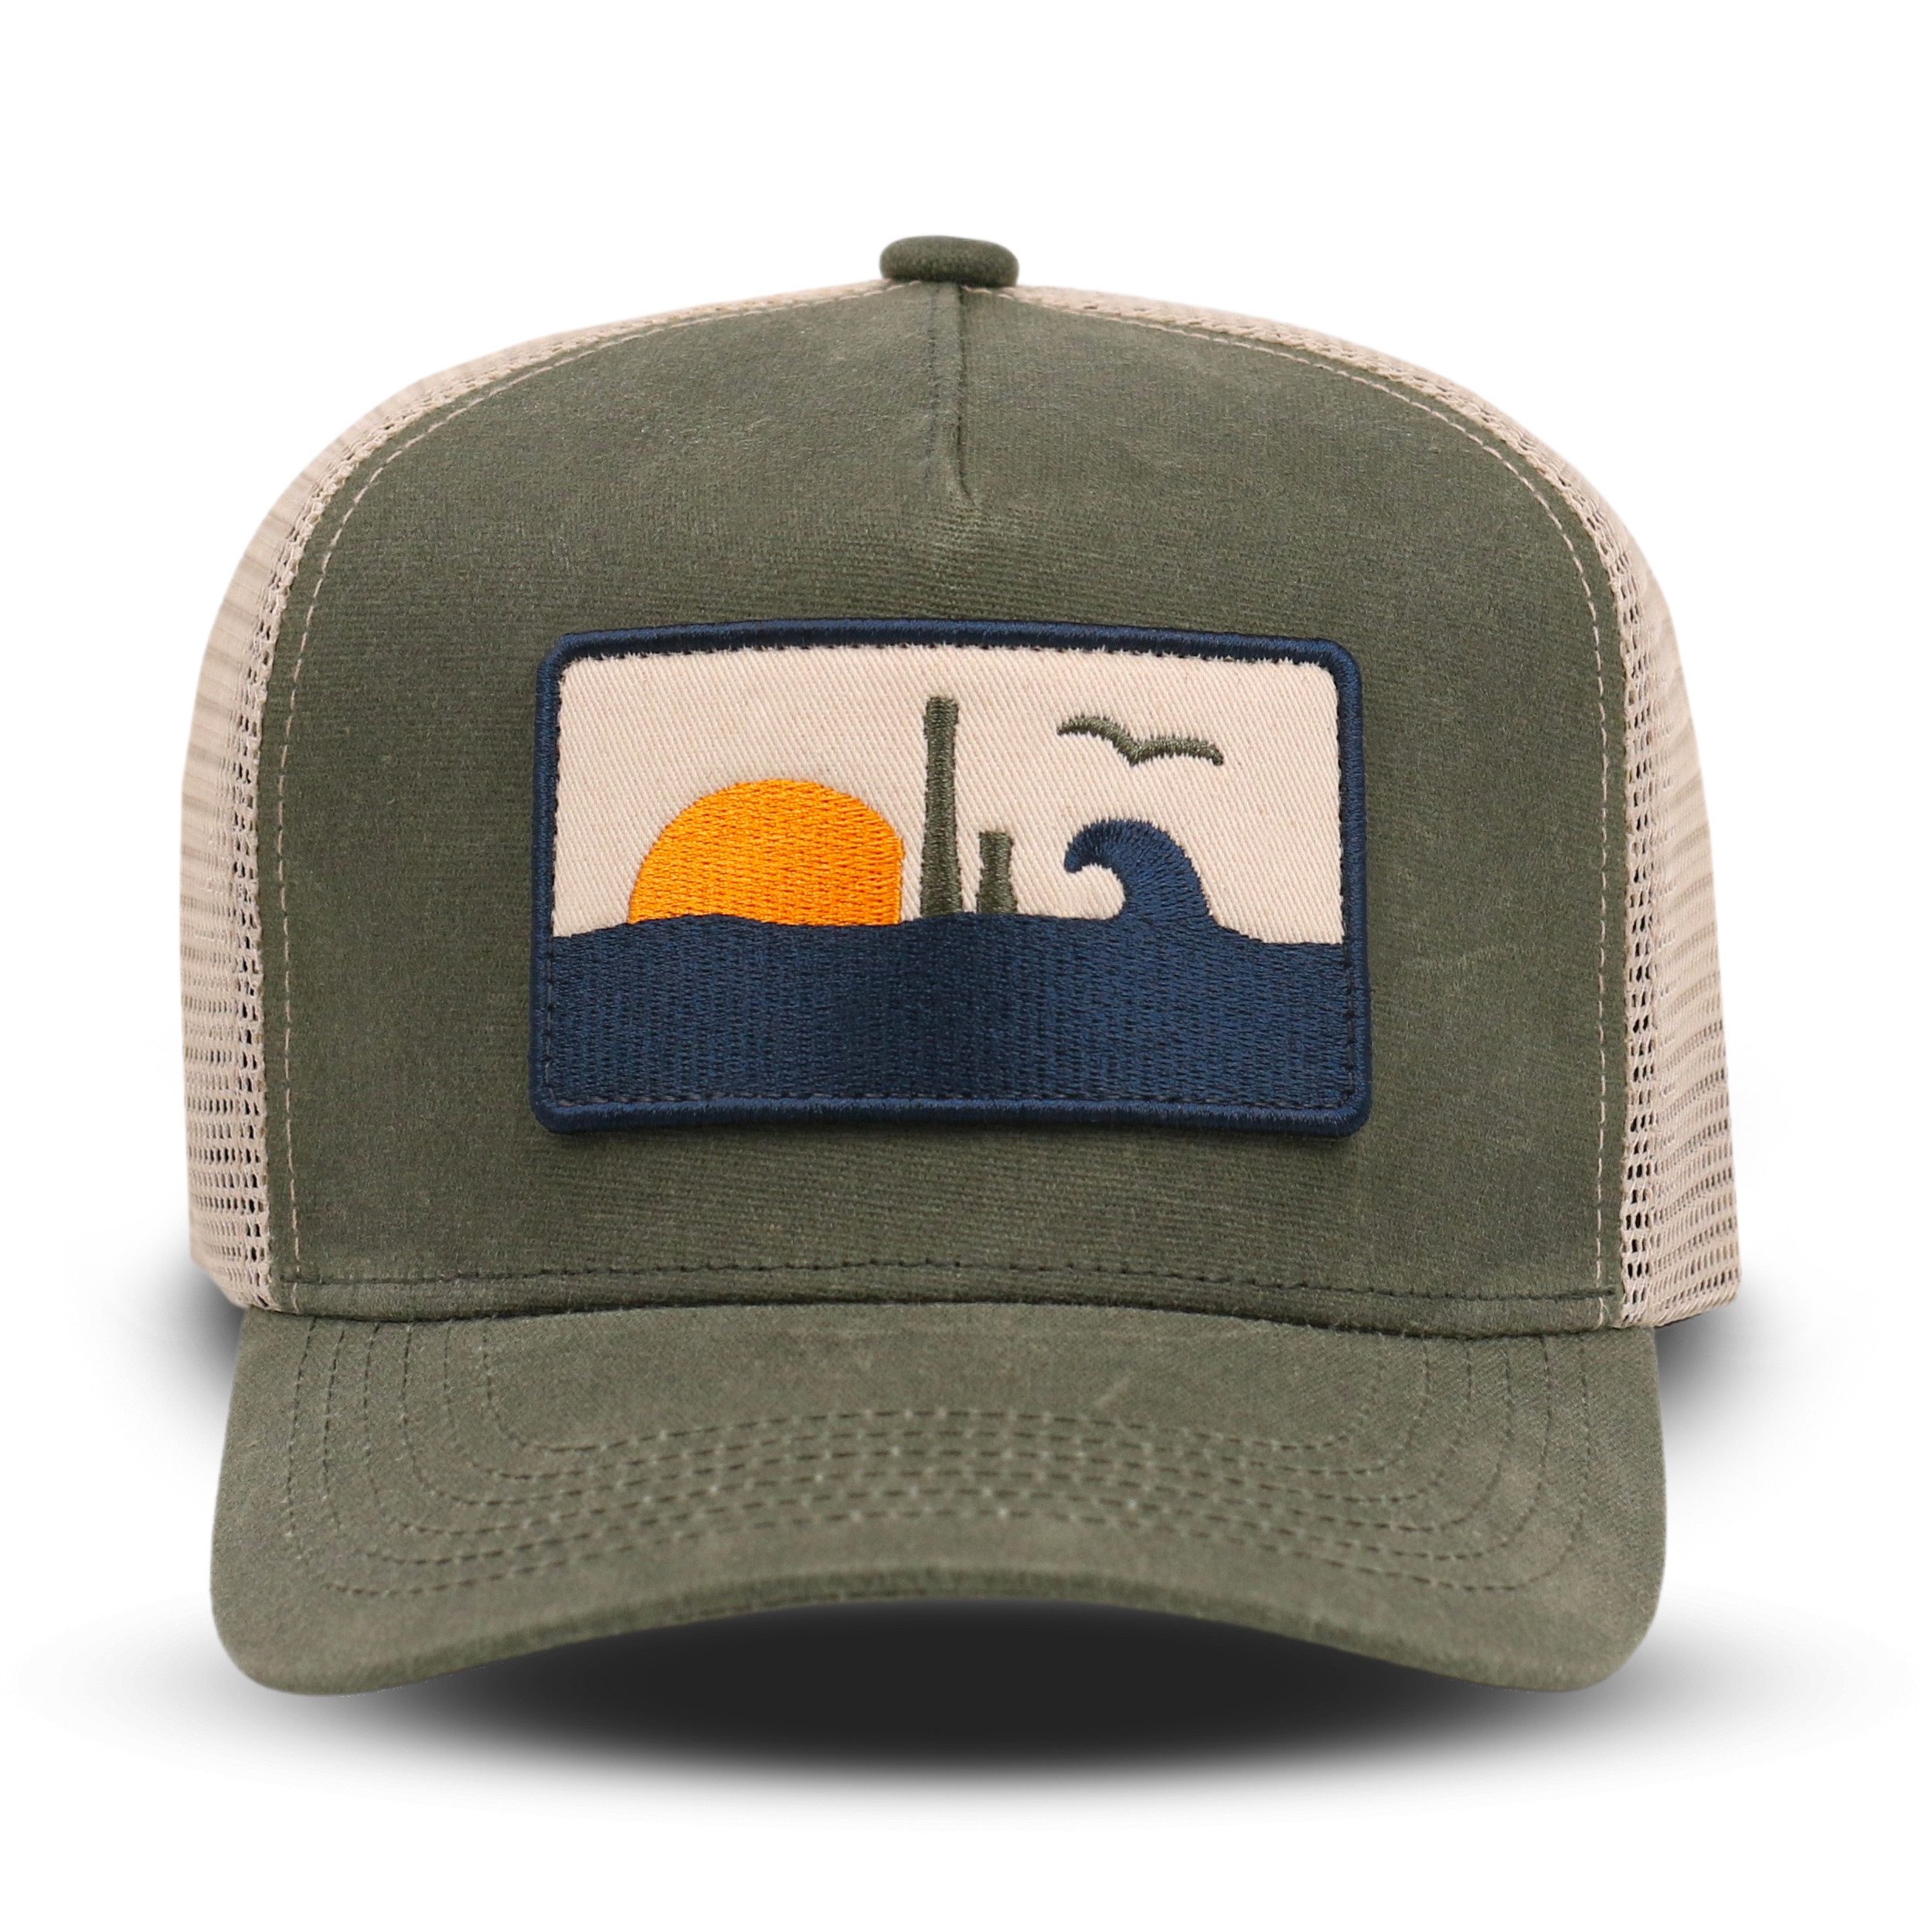 Trucker cap